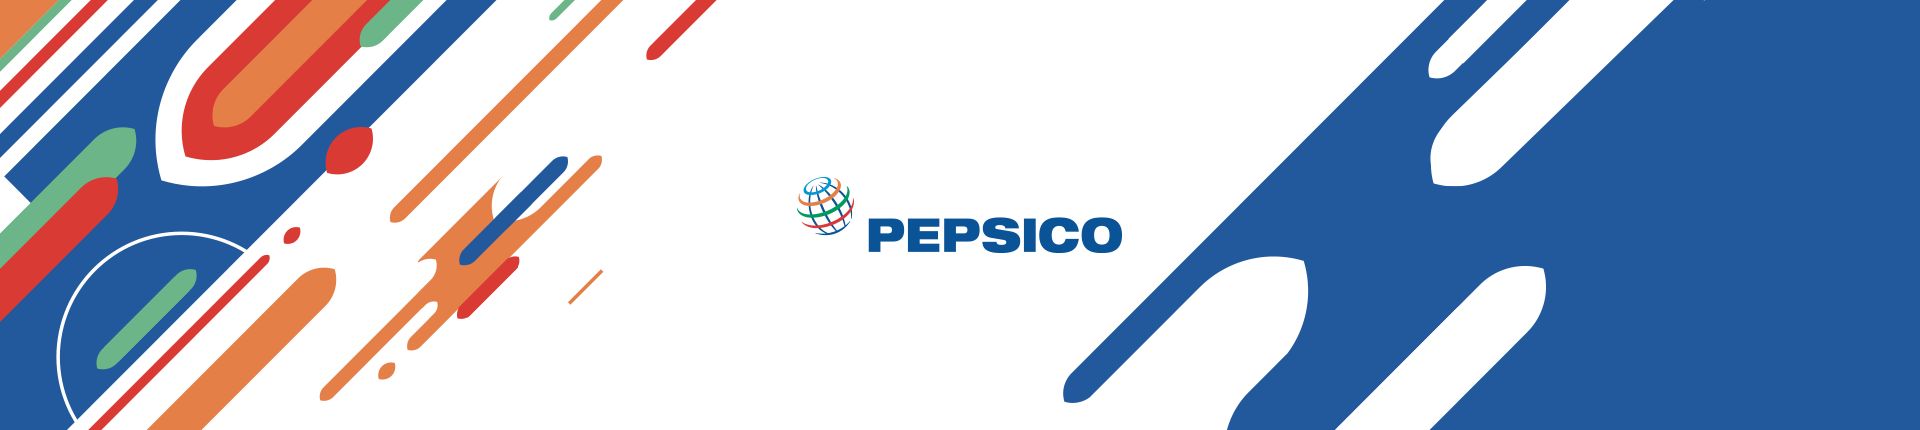 PepsiCo Türkiye Dijital İşveren Markası